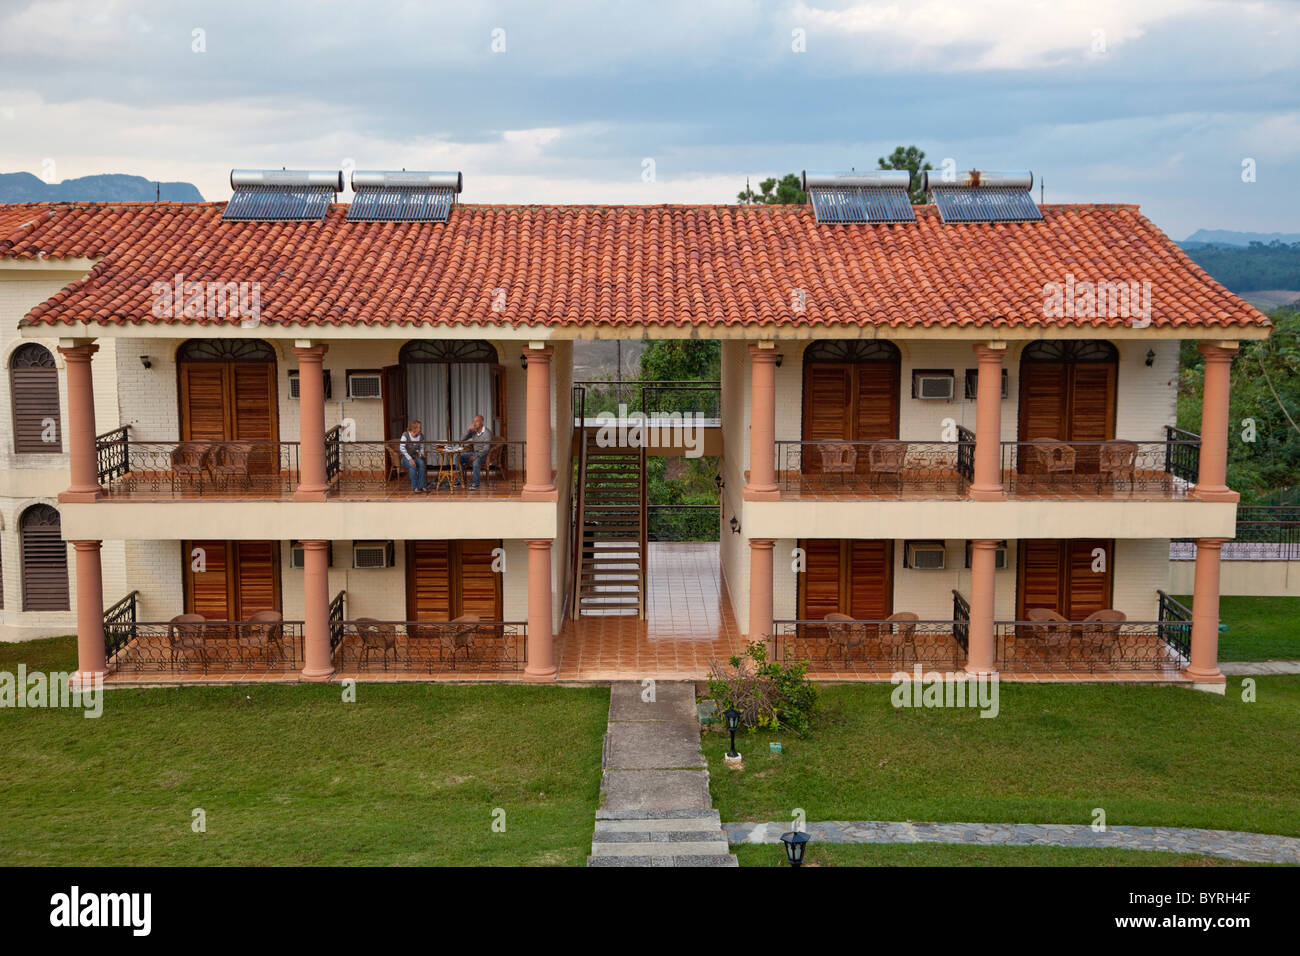 Cuba, Pinar del Rio Regione, Viñales (Vinales) Area. Pannelli solari sul tetto del locale Hotel Resort. Foto Stock